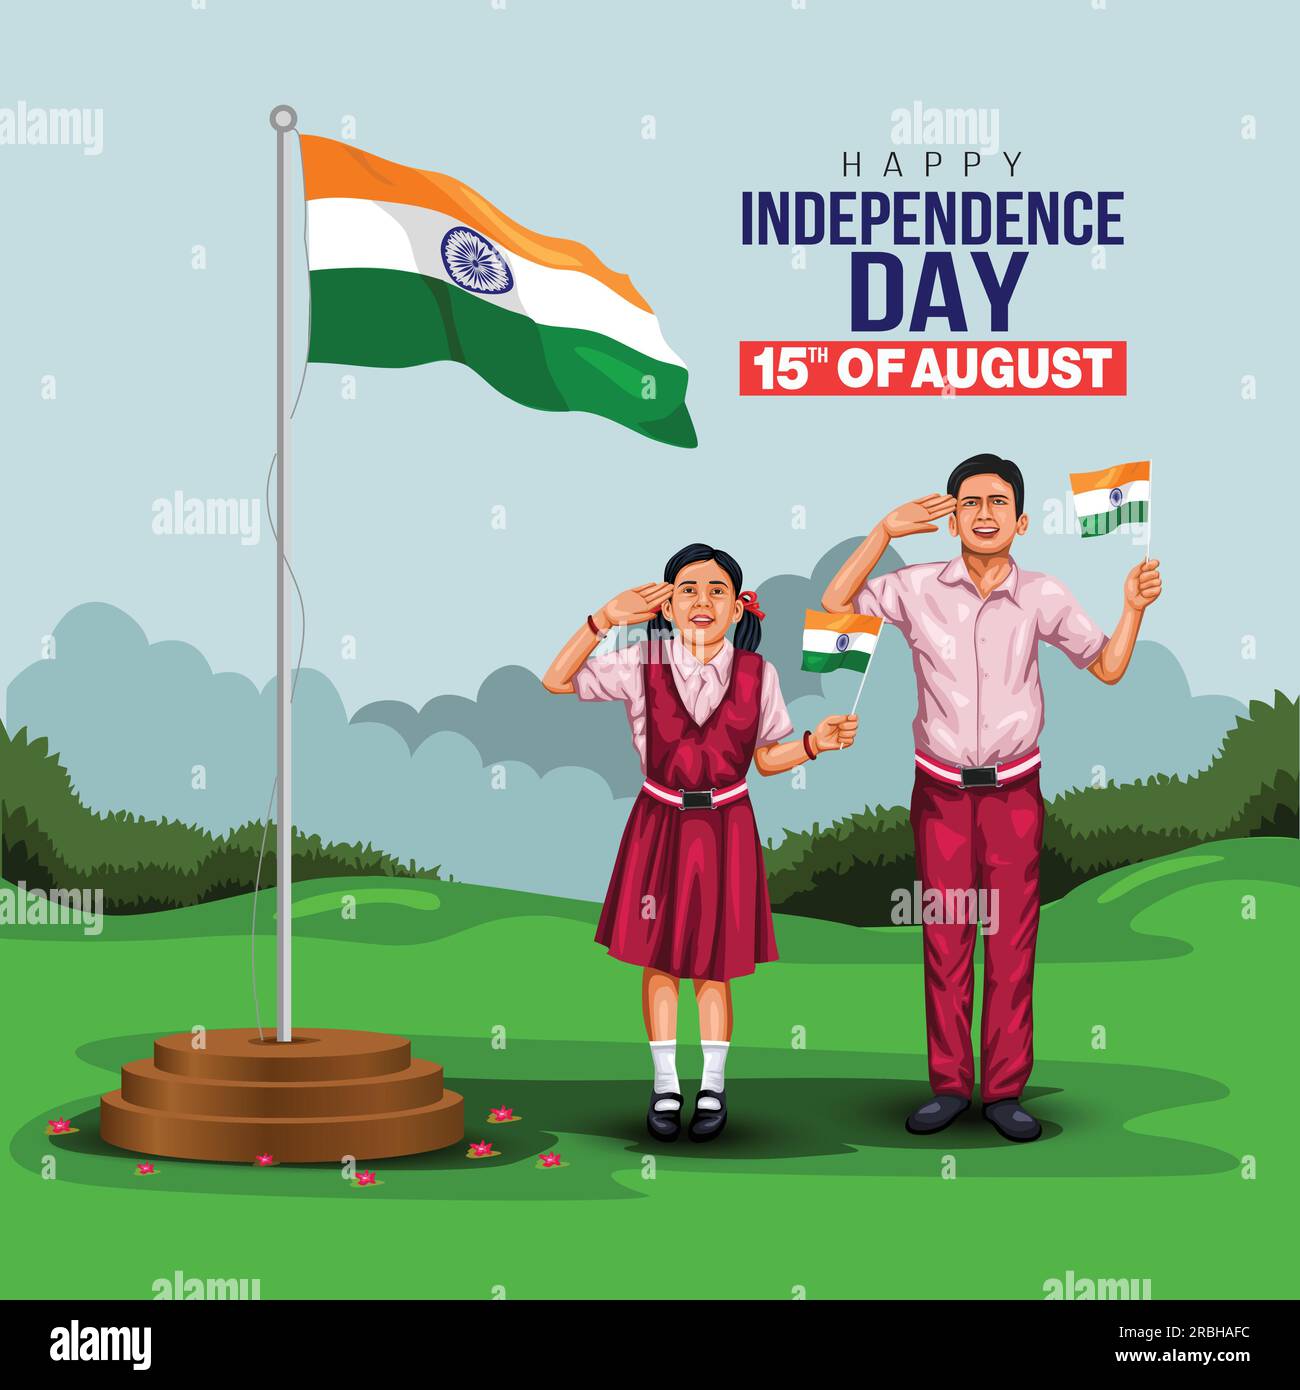 Heureux jour de l'indépendance Inde. Étudiant indien saluant le drapeau de l'Inde. dépliant de conception d'illustration vectorielle abstraite Illustration de Vecteur